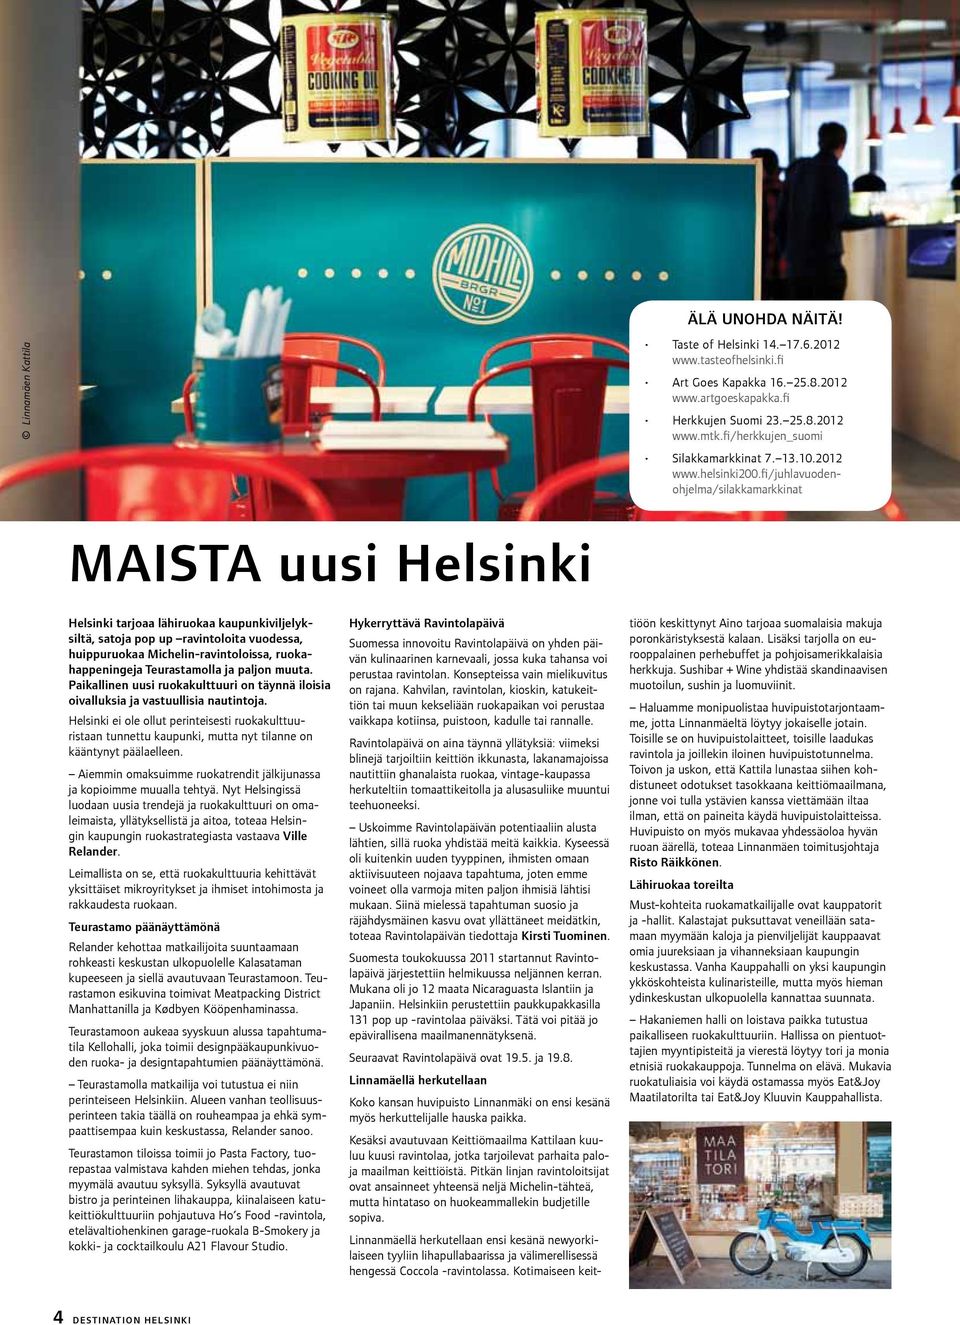 fi/juhlavuodenohjelma/silakkamarkkinat Maista uusi Helsinki Helsinki tarjoaa lähiruokaa kaupunkiviljelyksiltä, satoja pop up ravintoloita vuodessa, huippuruokaa Michelin-ravintoloissa,